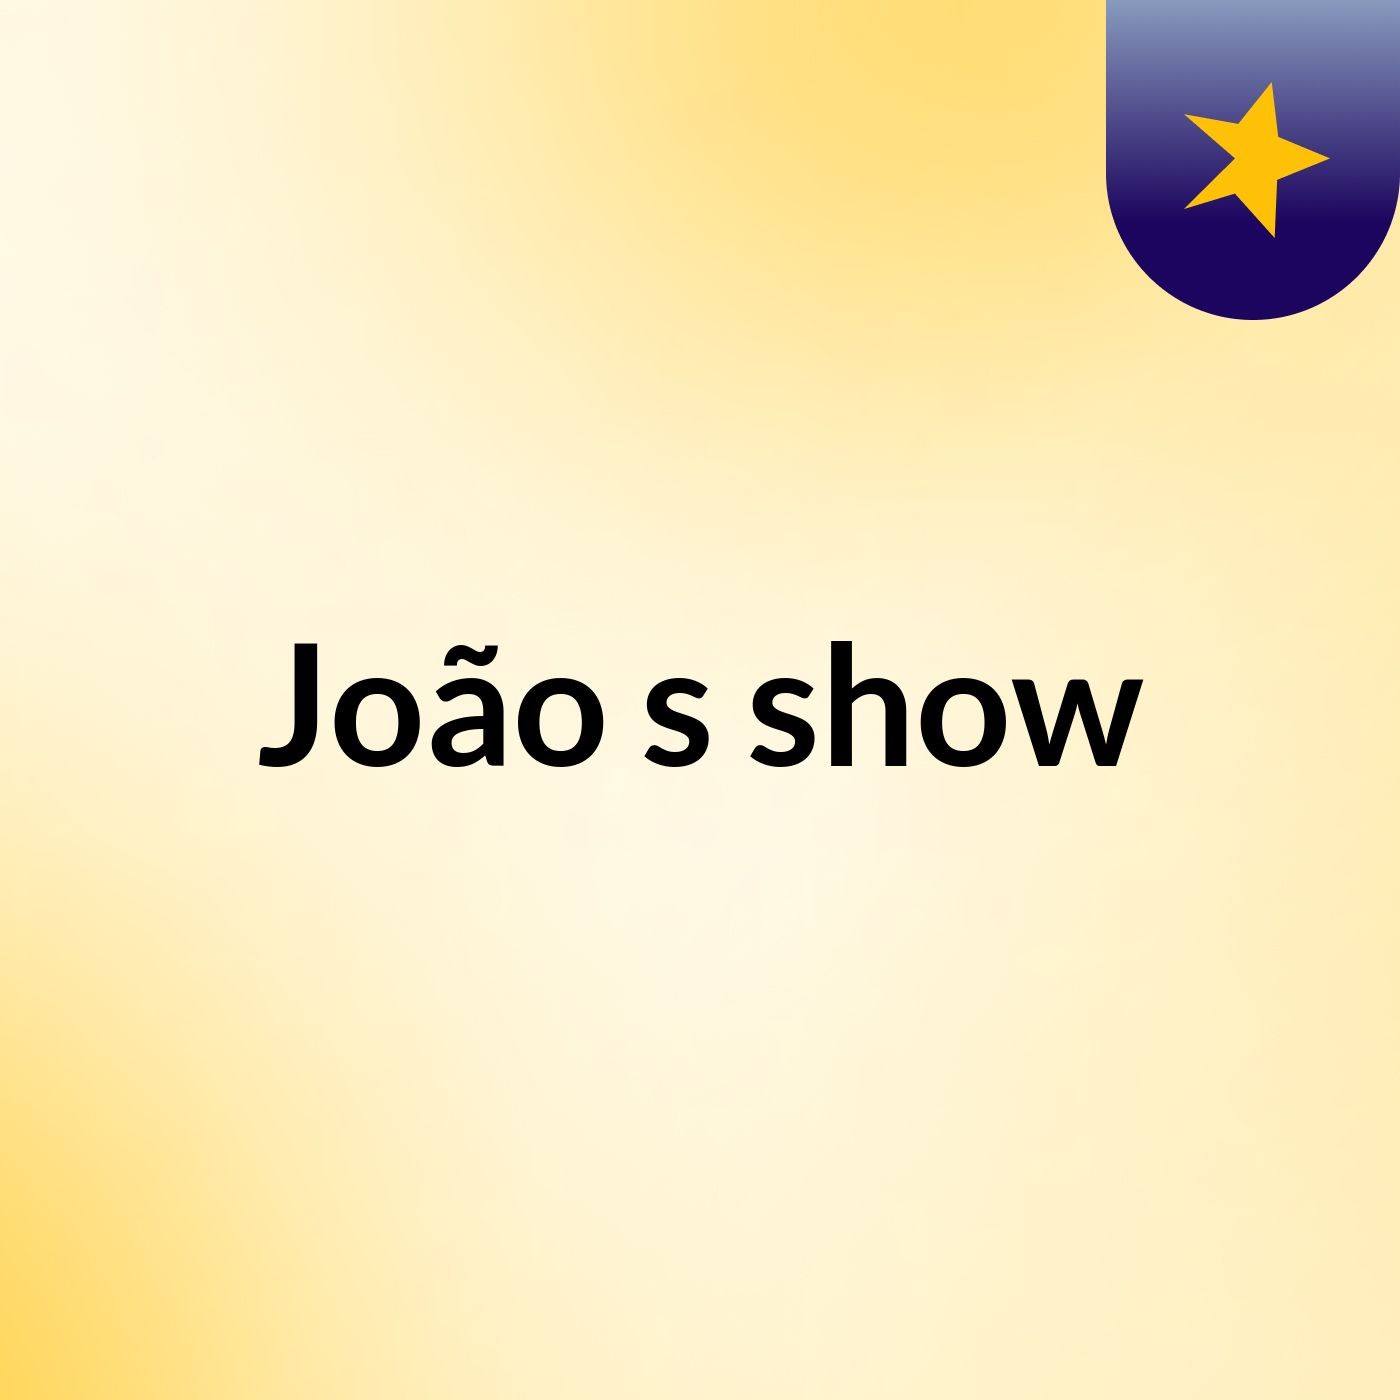 João's show